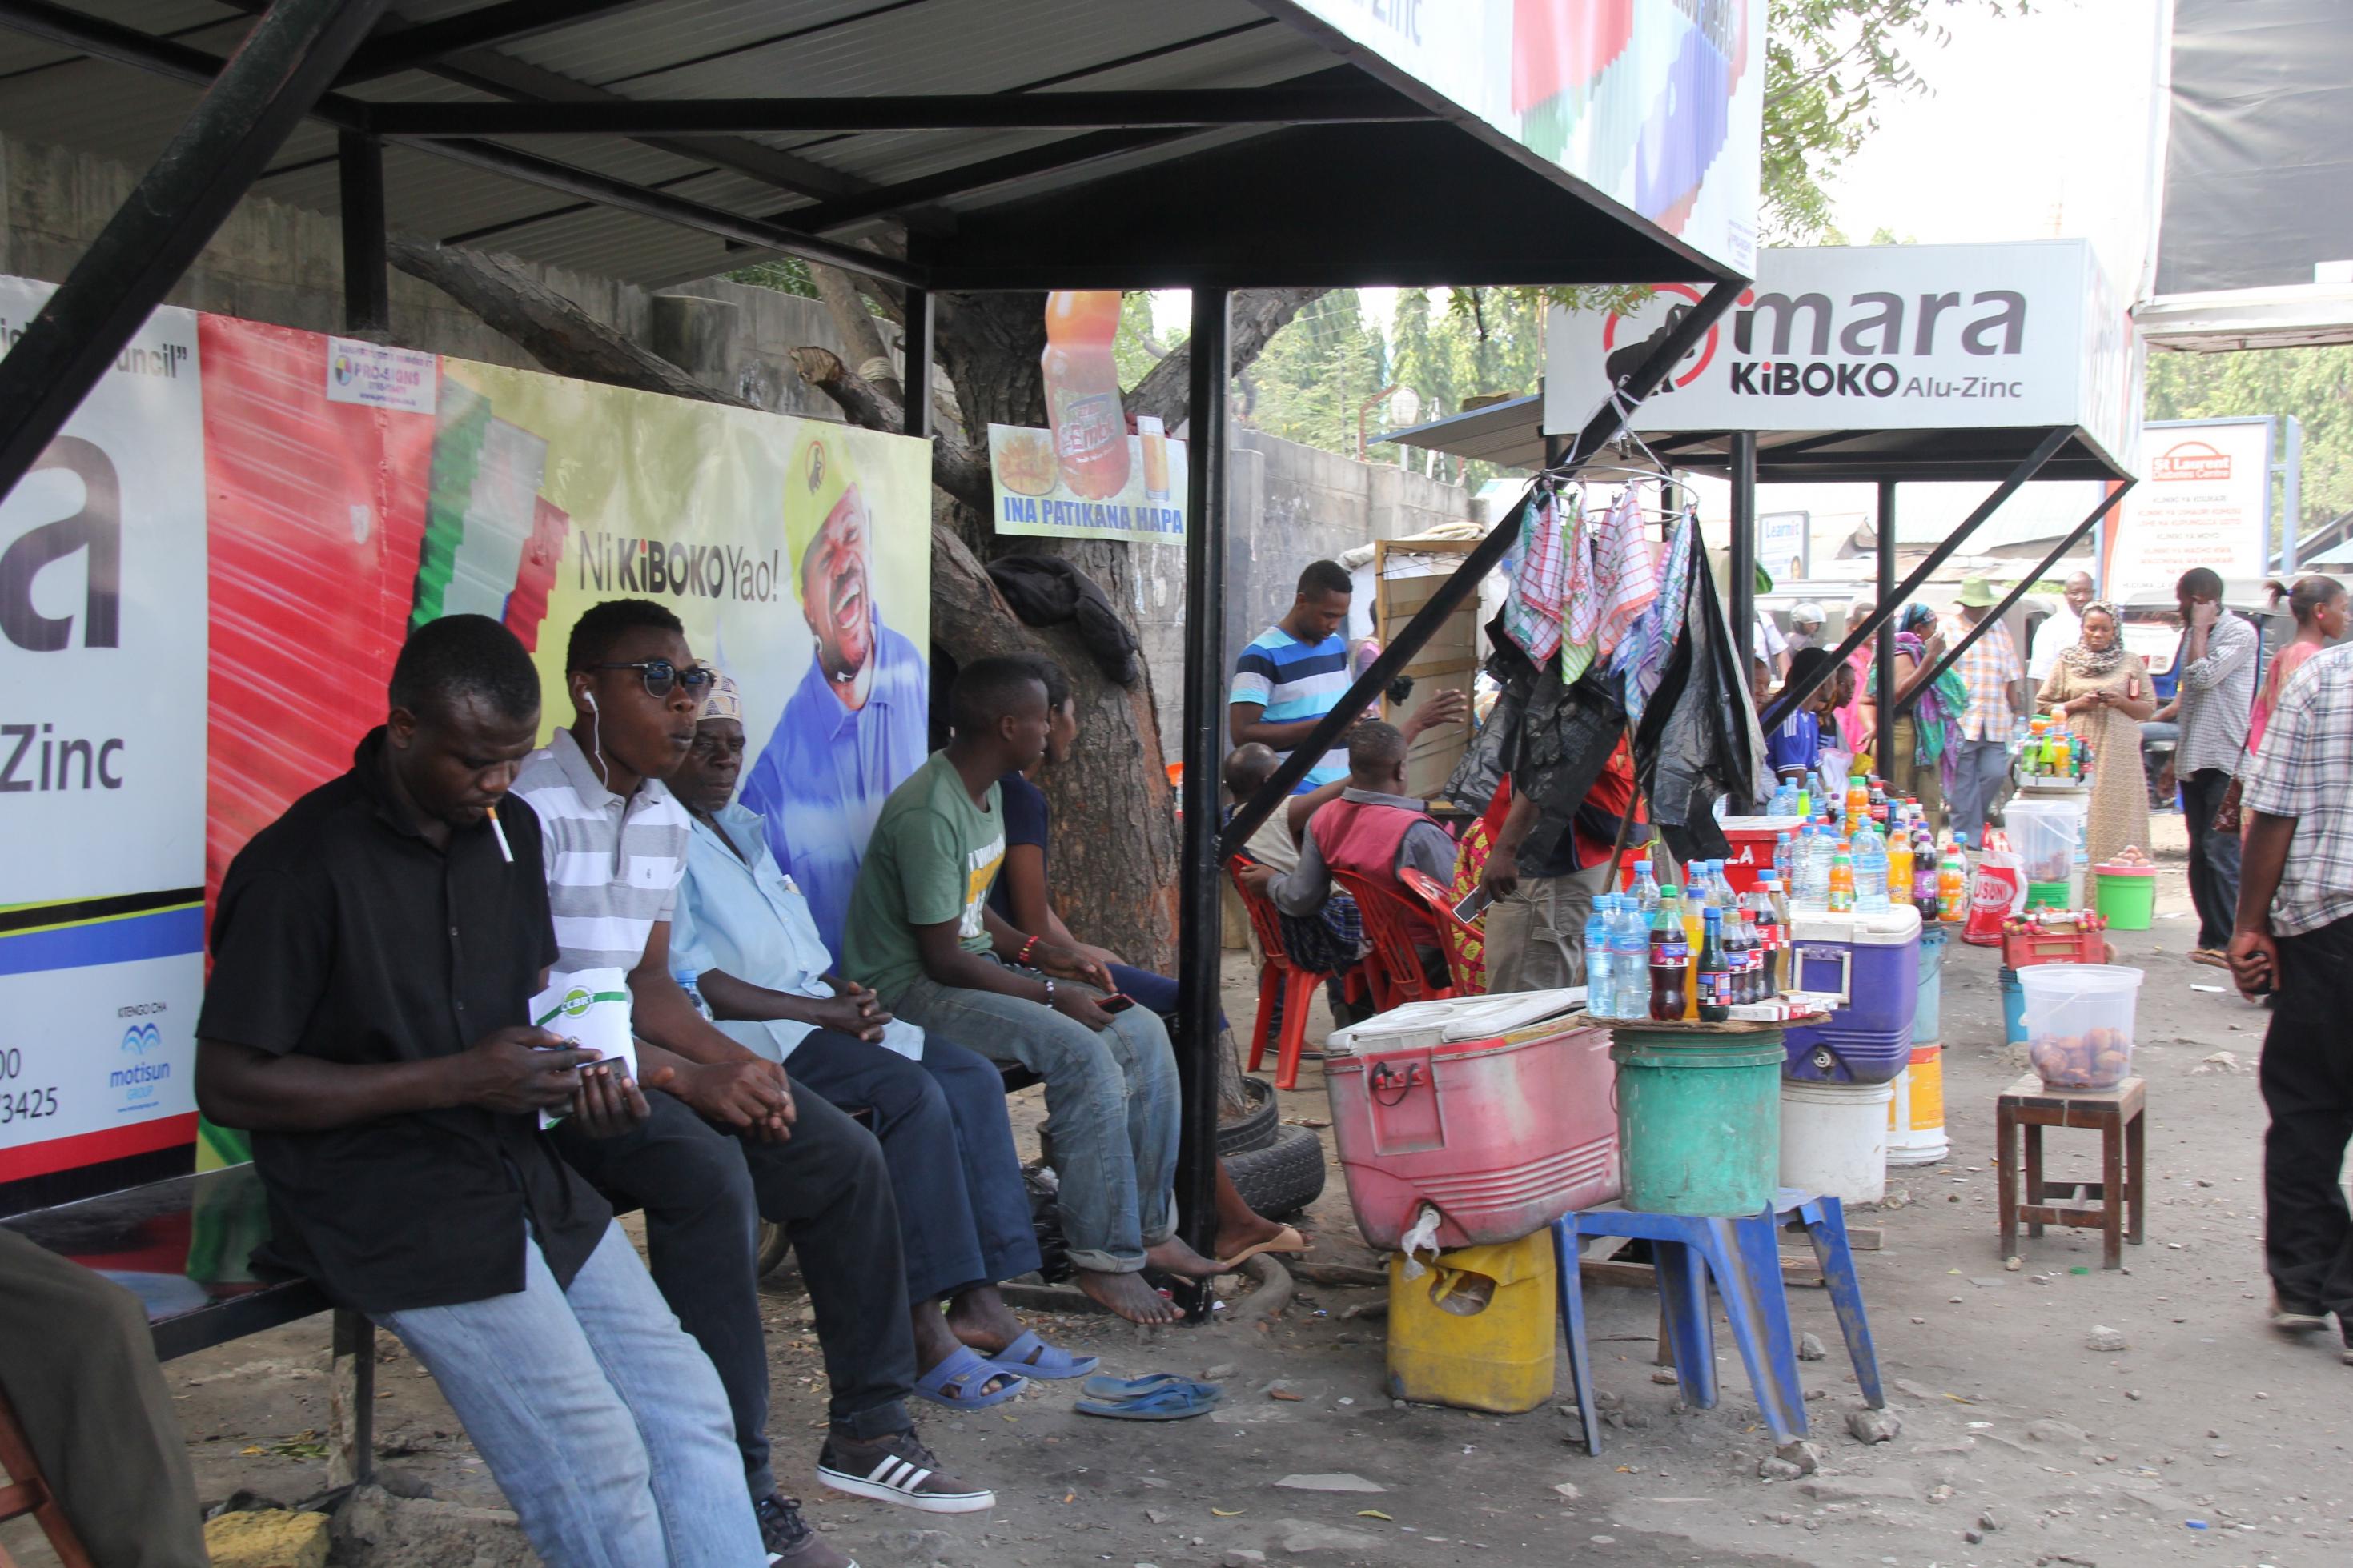 An einer Straße in der tansanischen Metropole Dar es Salaam warten viele Menschen an einer Bushaltestelle. Daneben haben Händlerinnen und Händler ihre Waren aufgebaut, darunter Limoflaschen, Tücher, Eimer mit Fettgebackenem.